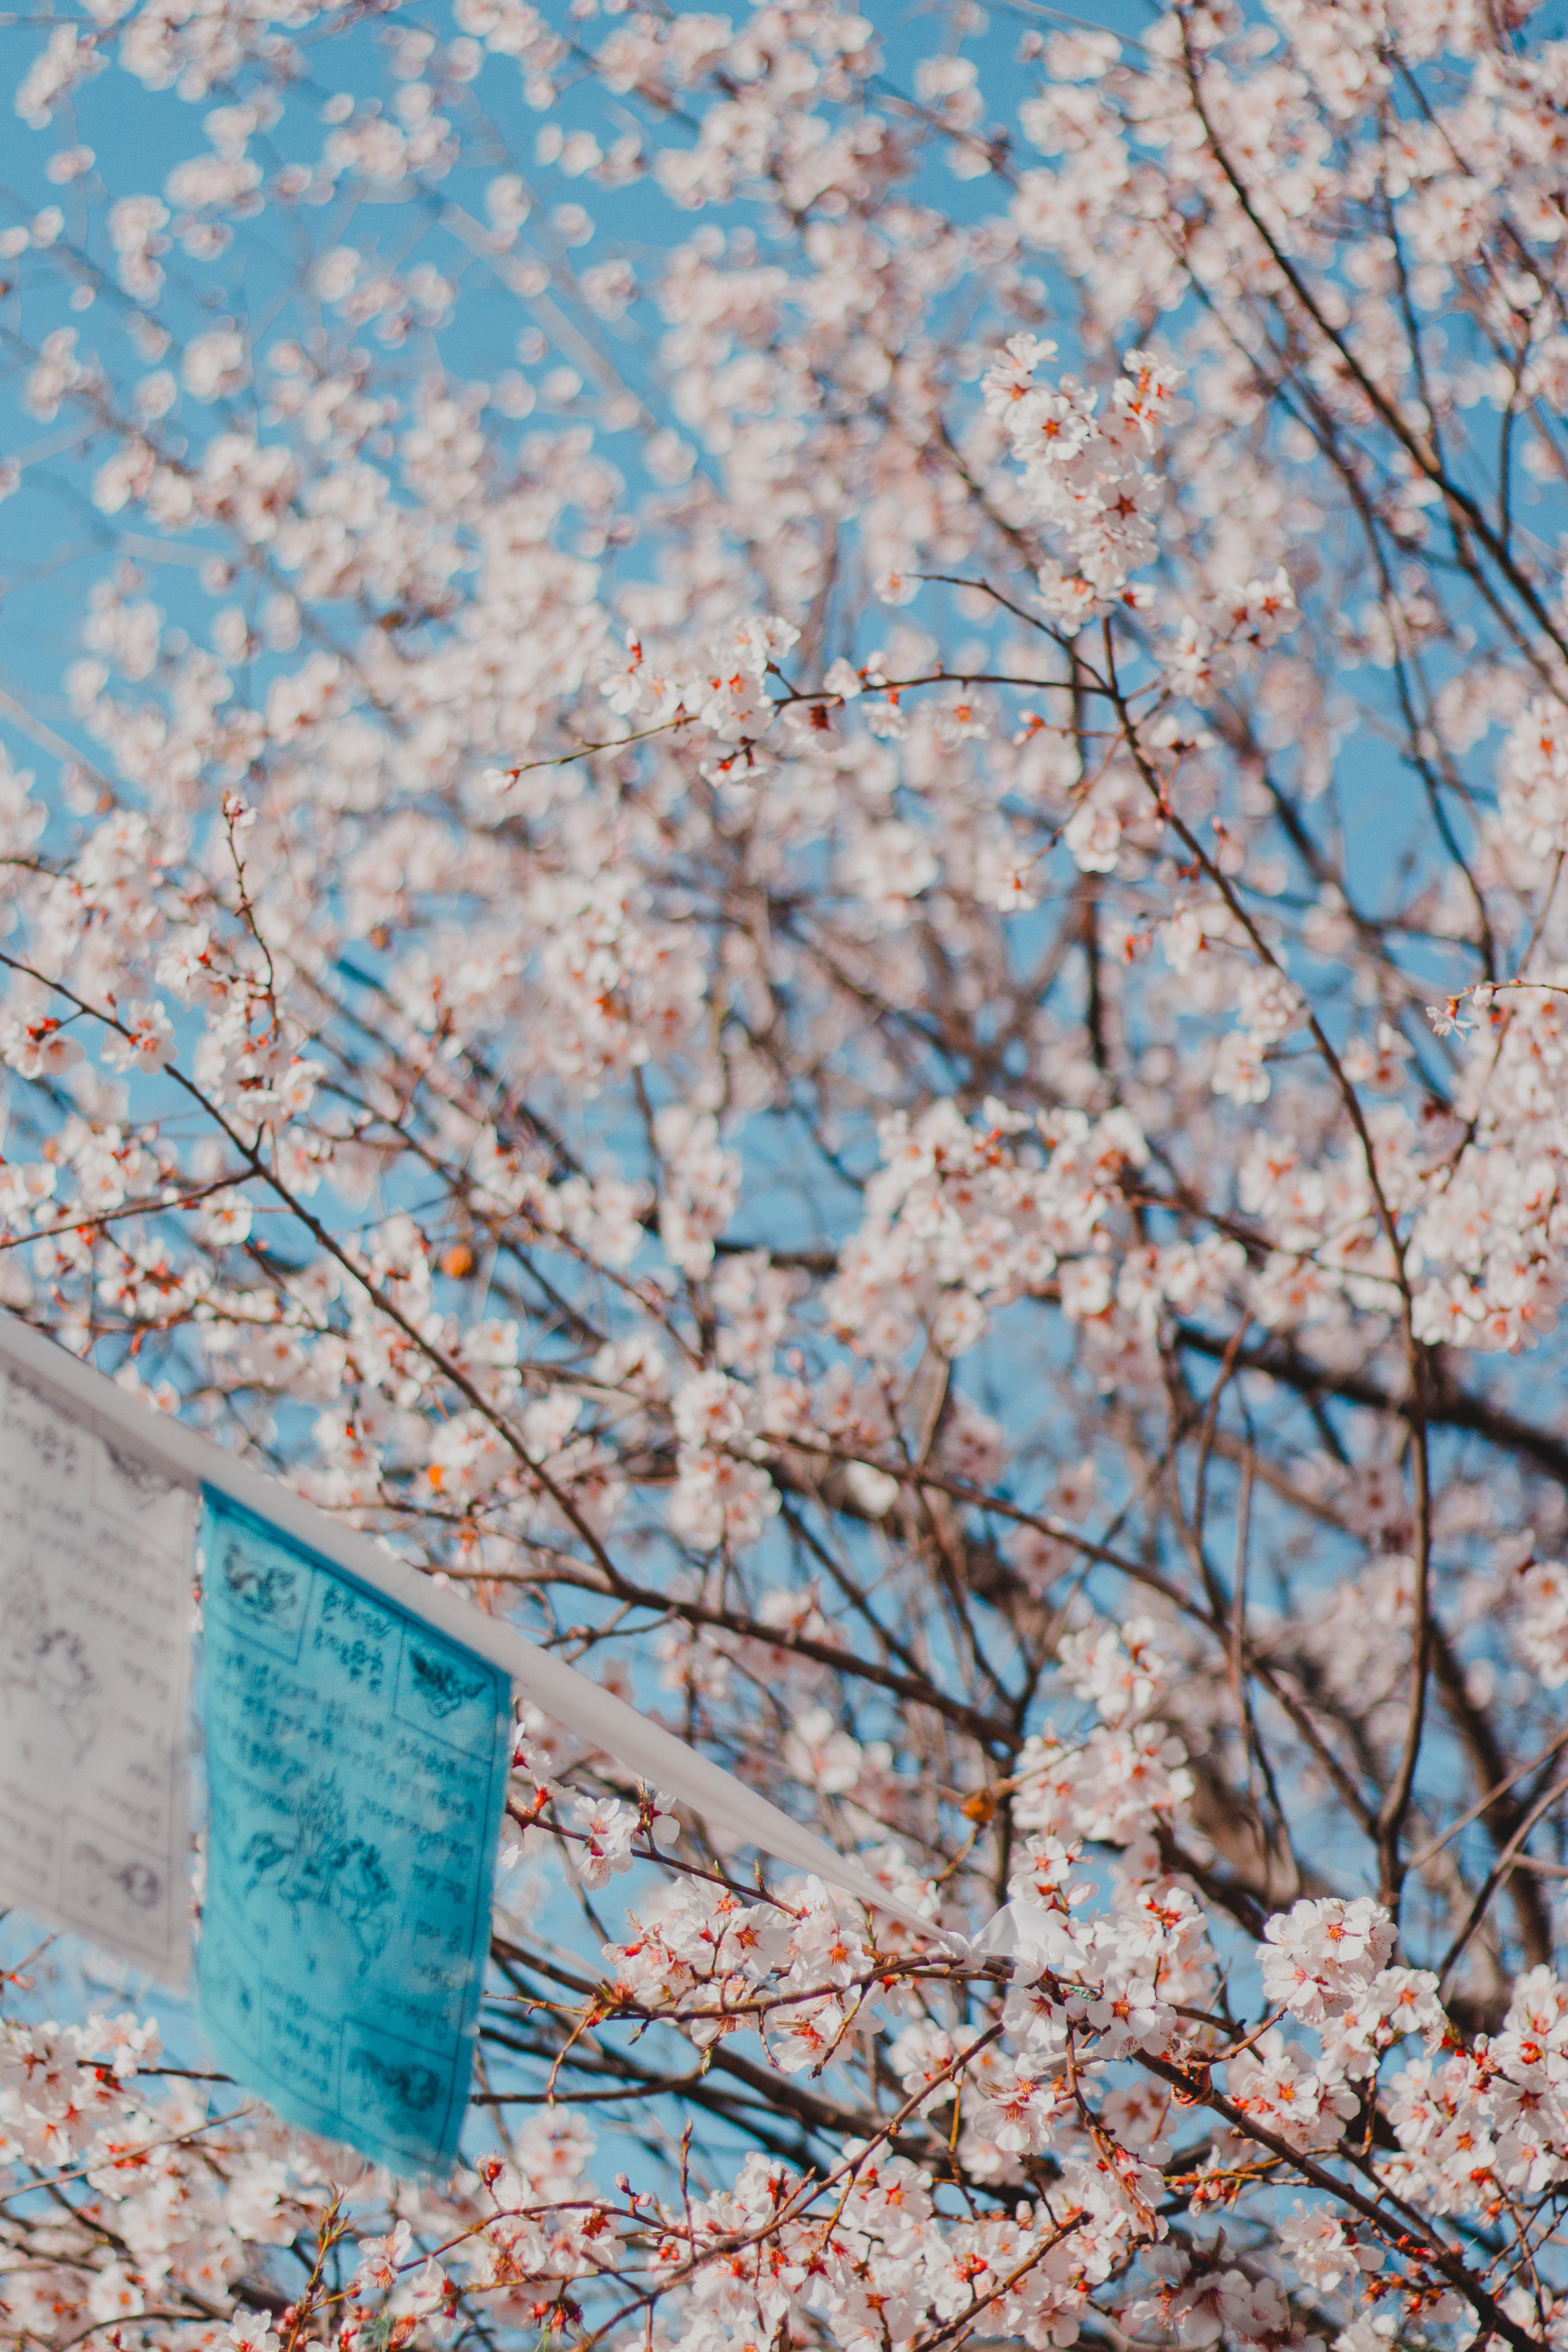 四月的香格里拉--山寺桃花始盛开